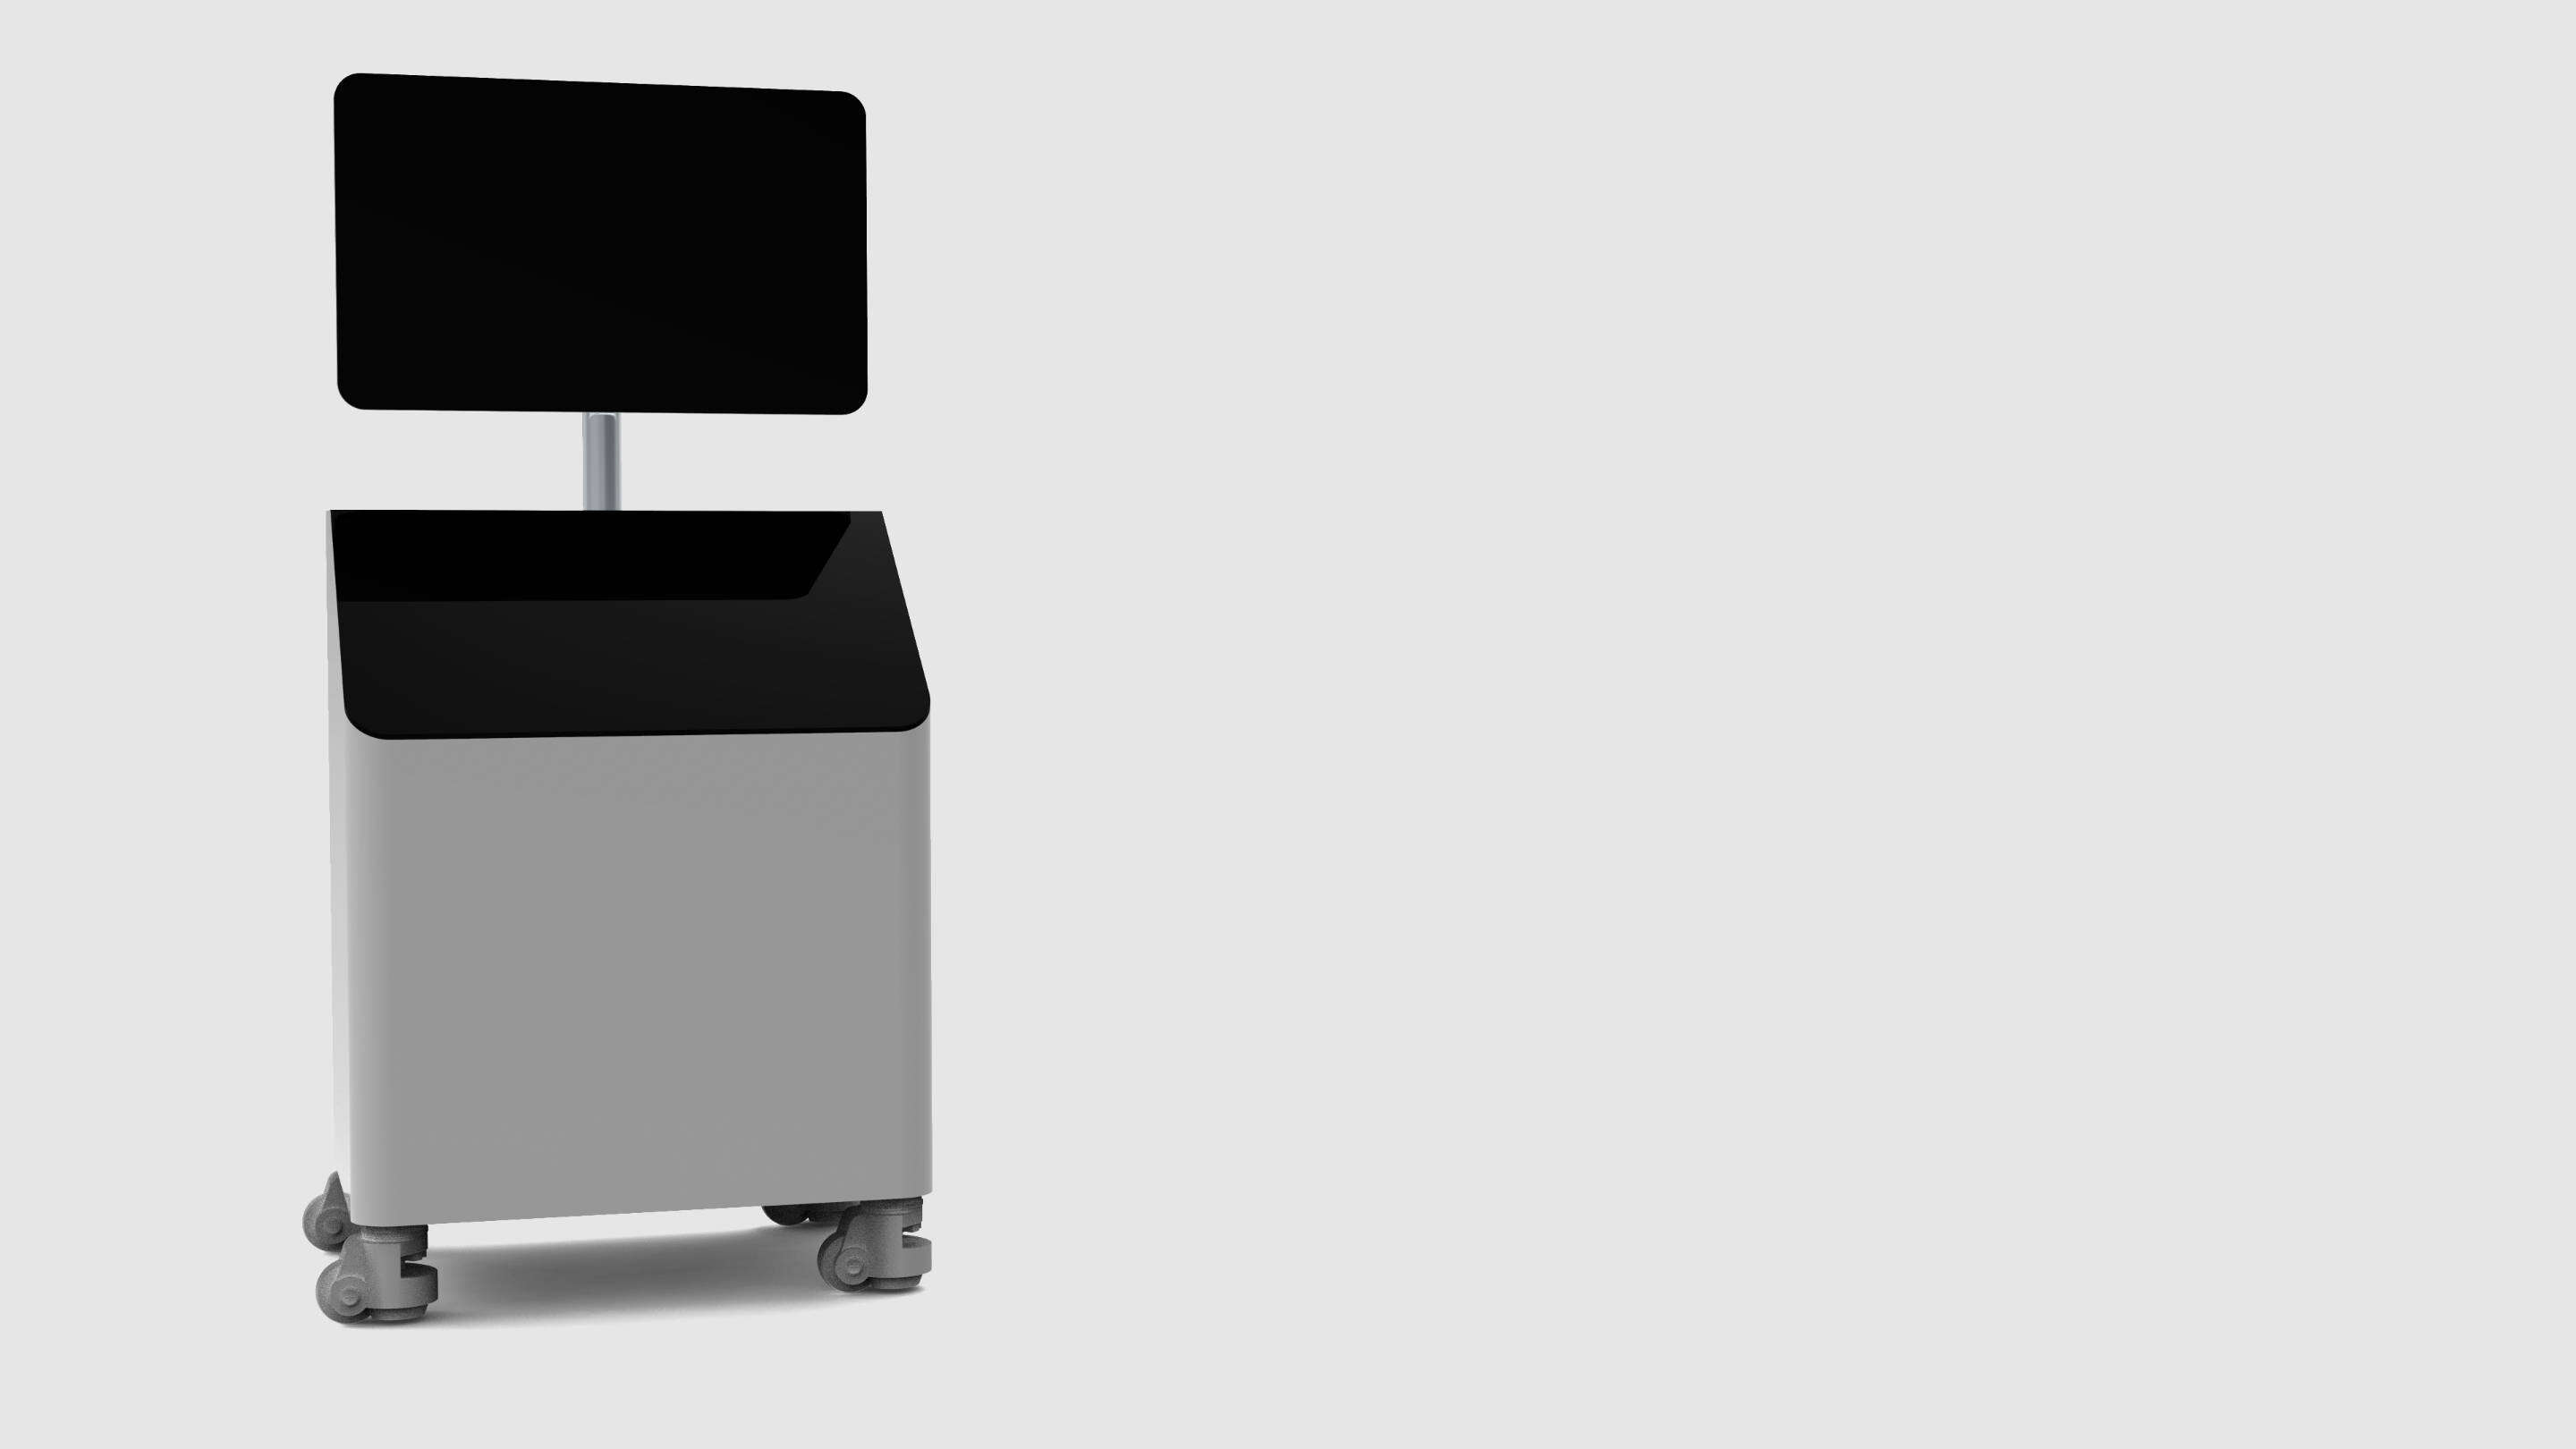 Design - Design konsepter en svart og grå vogn med en skjerm